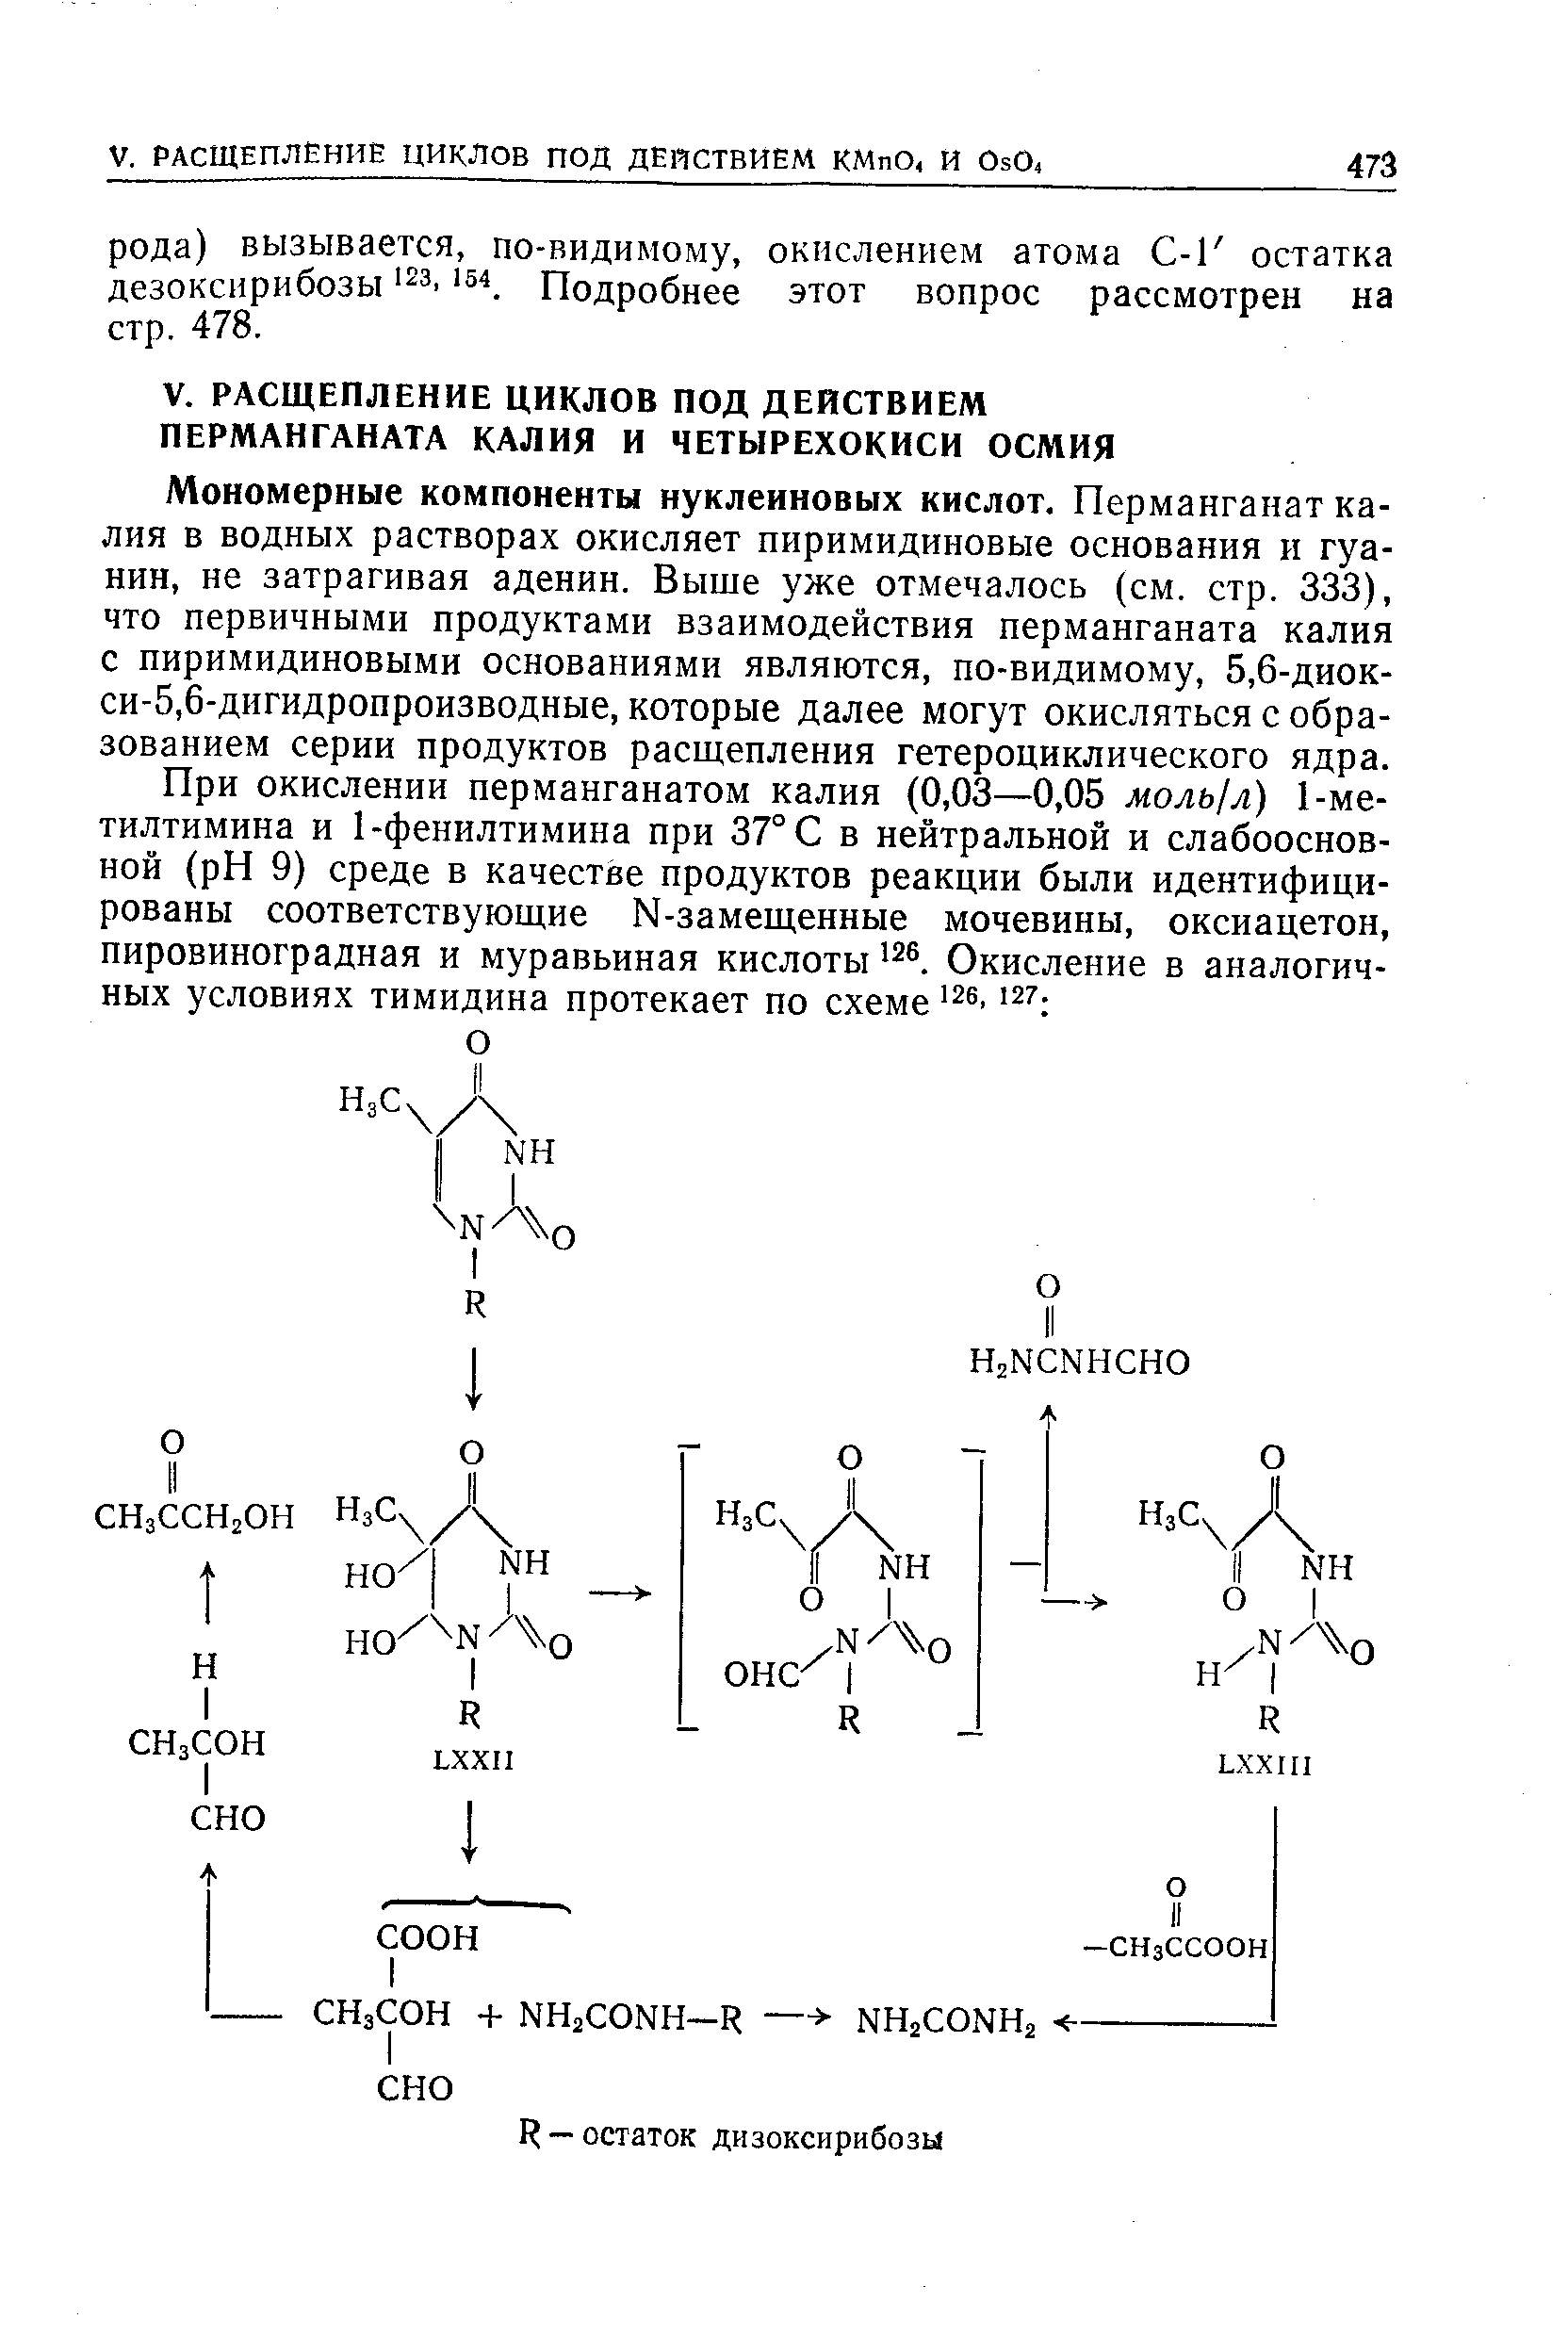 Мономерные компоненты нуклеиновых кислот. Перманганат калия в водных растворах окисляет пиримидиновые основания и гуанин, не затрагивая аденин. Выще уже отмечалось (см. стр. 333), что первичными продуктами взаимодействия перманганата калия с пиримидиновыми основаниями являются, по-видимому, 5,6-диок-си-5,6-дигидропроизводные, которые далее могут окисляться с образованием серии продуктов расщепления гетероциклического ядра.